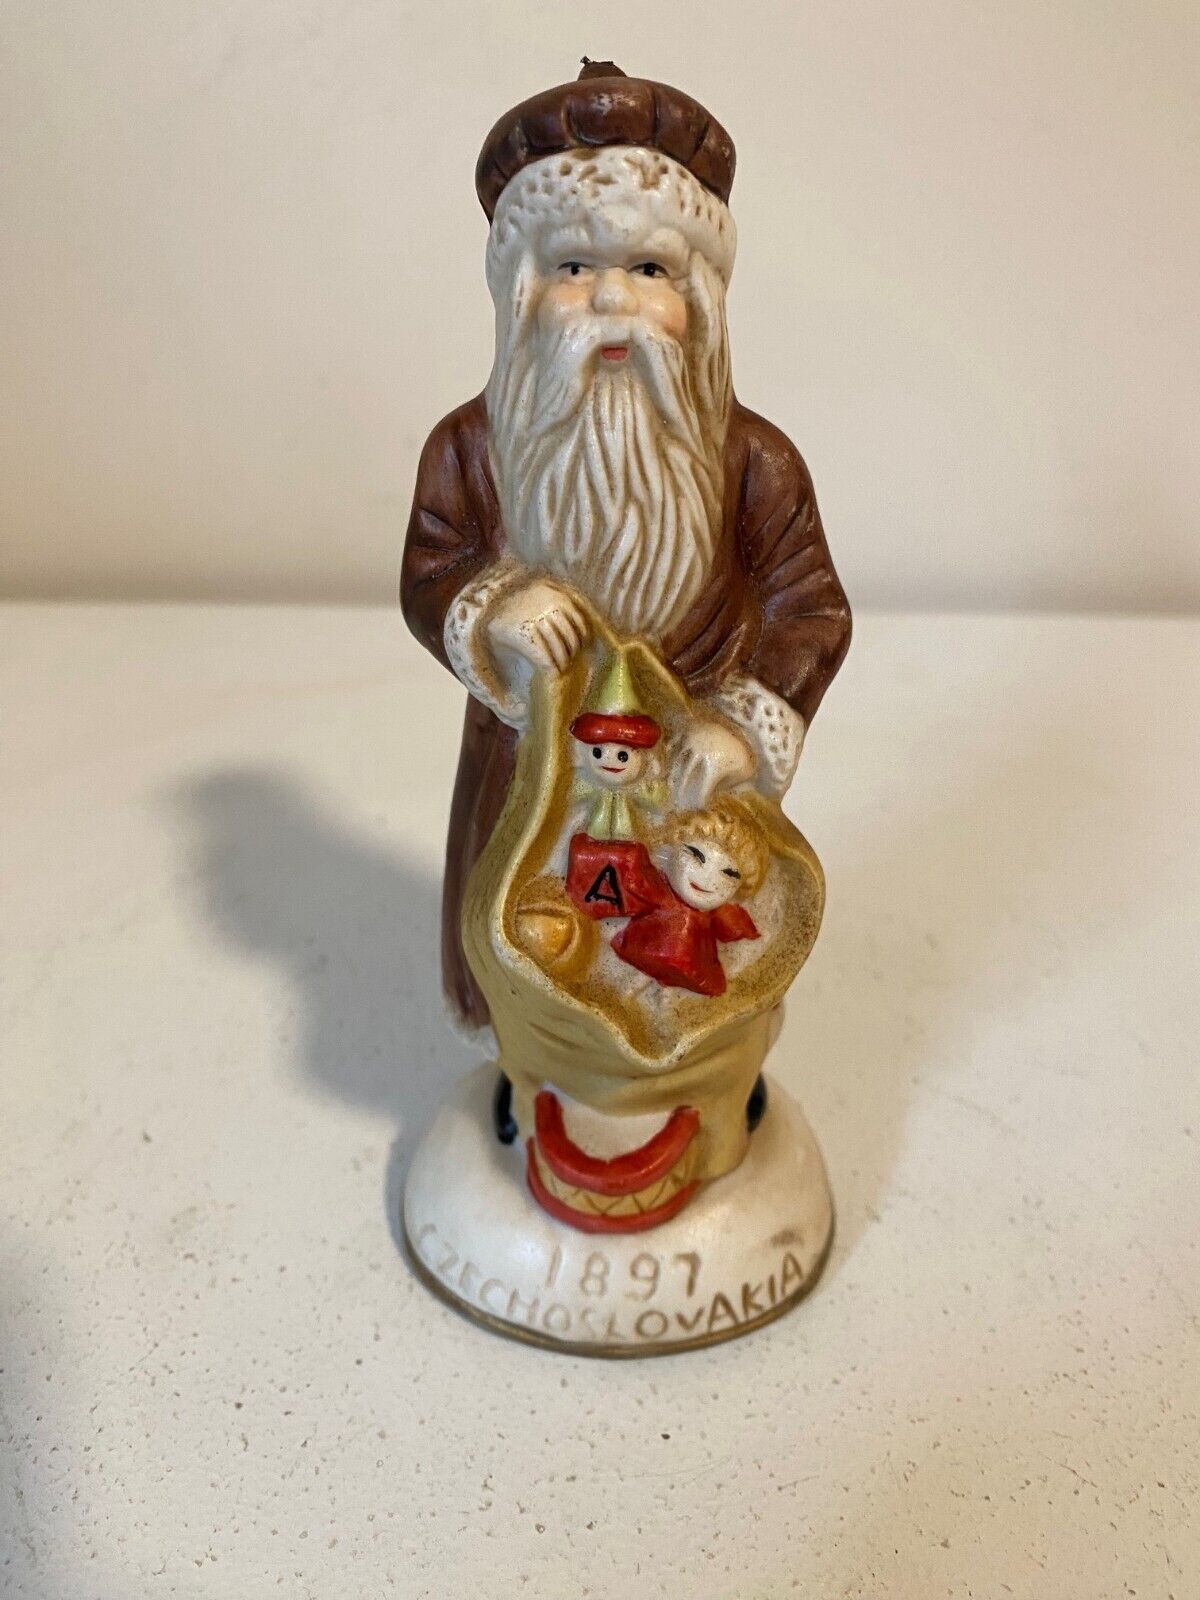 1897 Czechoslavakia Porcelain Santa Claus Christmas Ornament